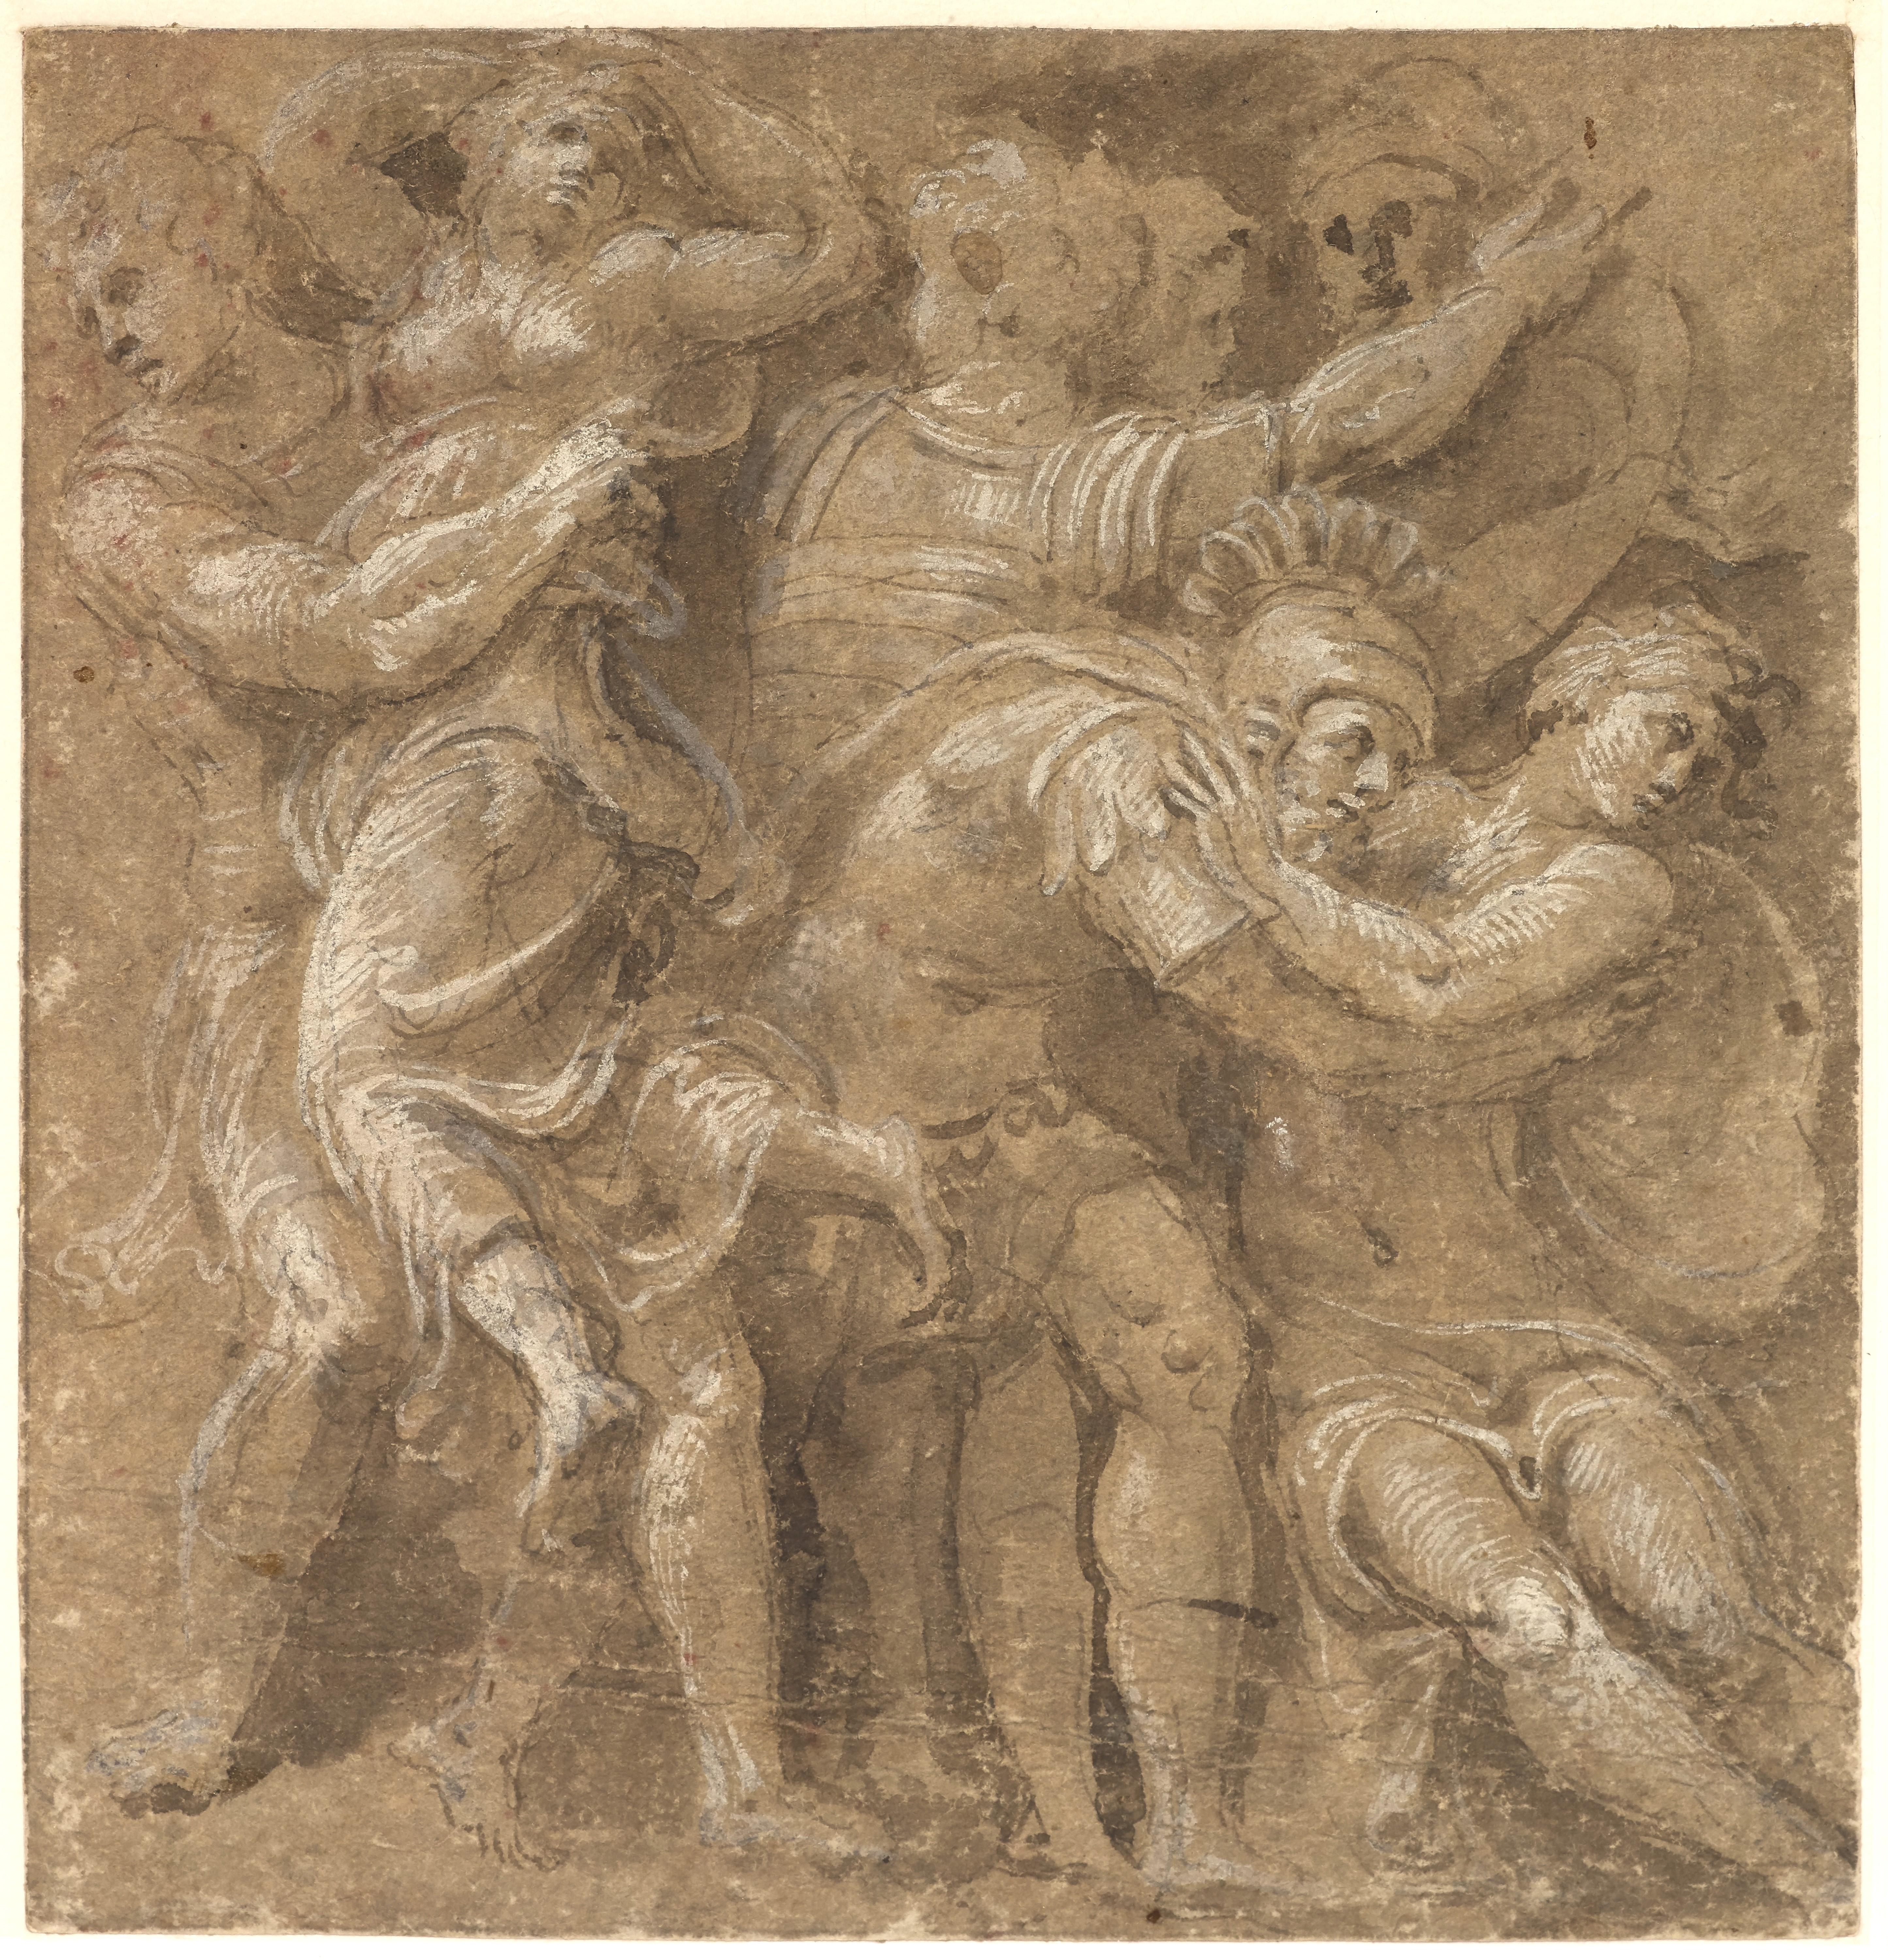 The Abduction of the Sabine Women, eine Renaissance-Zeichnung von Biagio Pupini